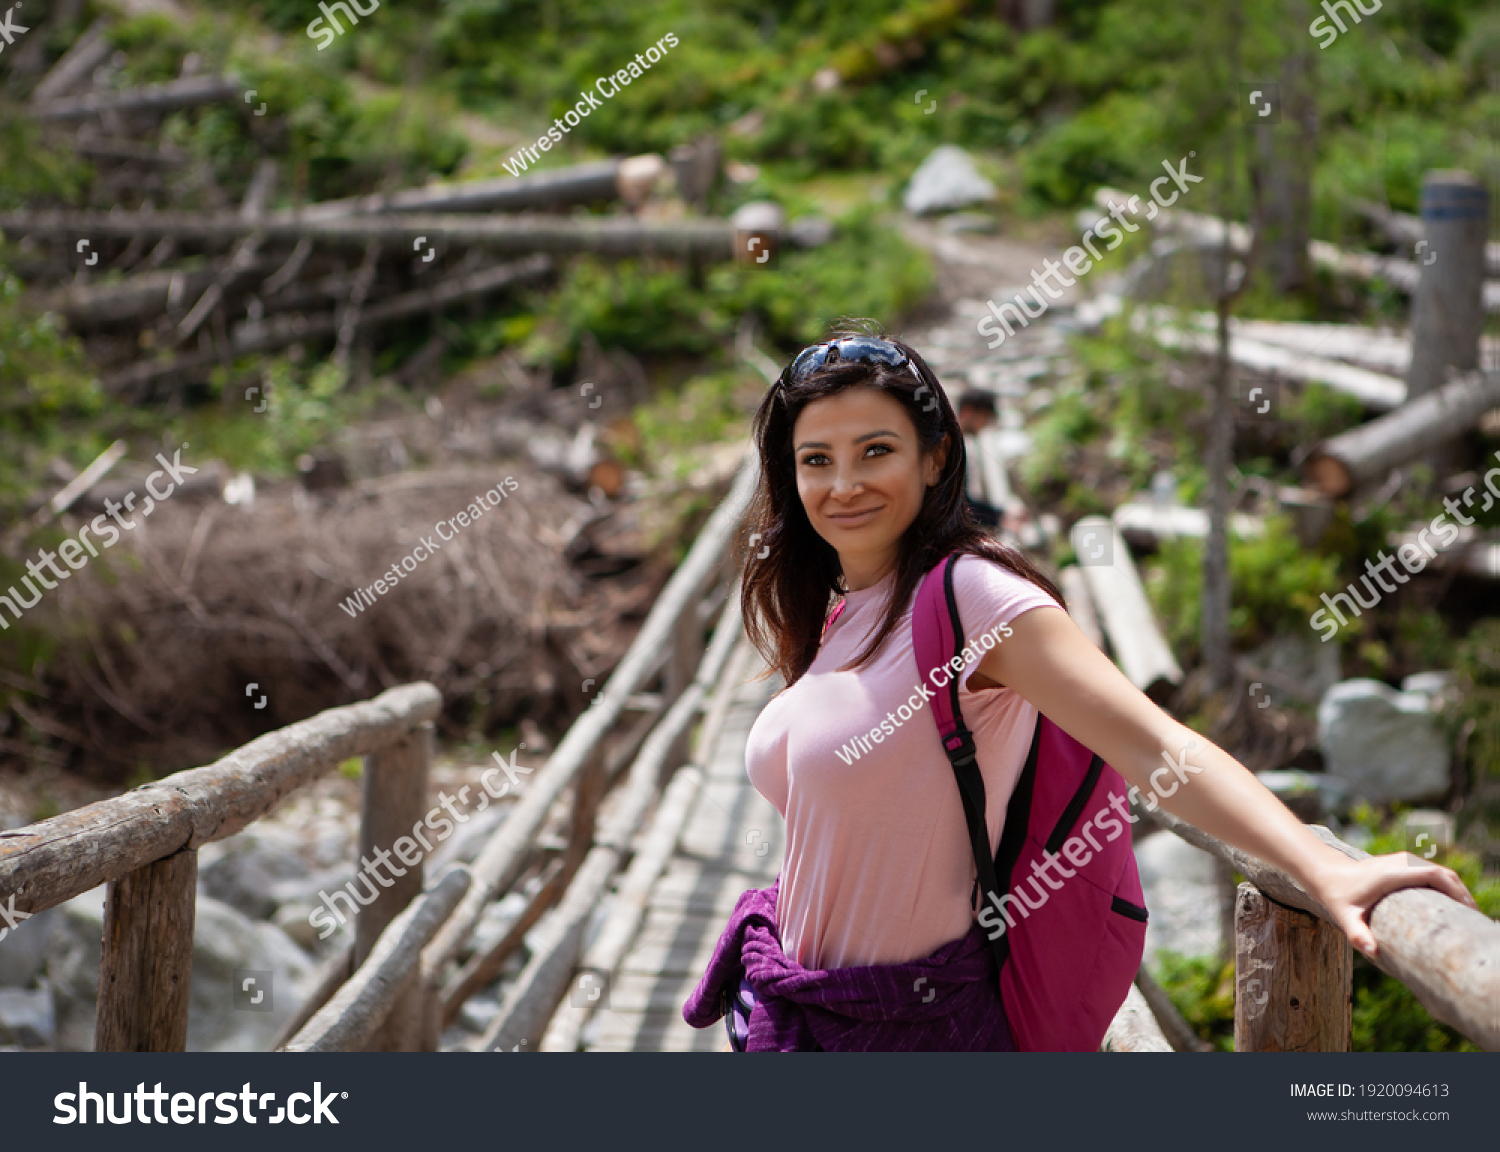 Apellido Revisión tornillo 8,891 Hiking Sexy Images, Stock Photos & Vectors | Shutterstock